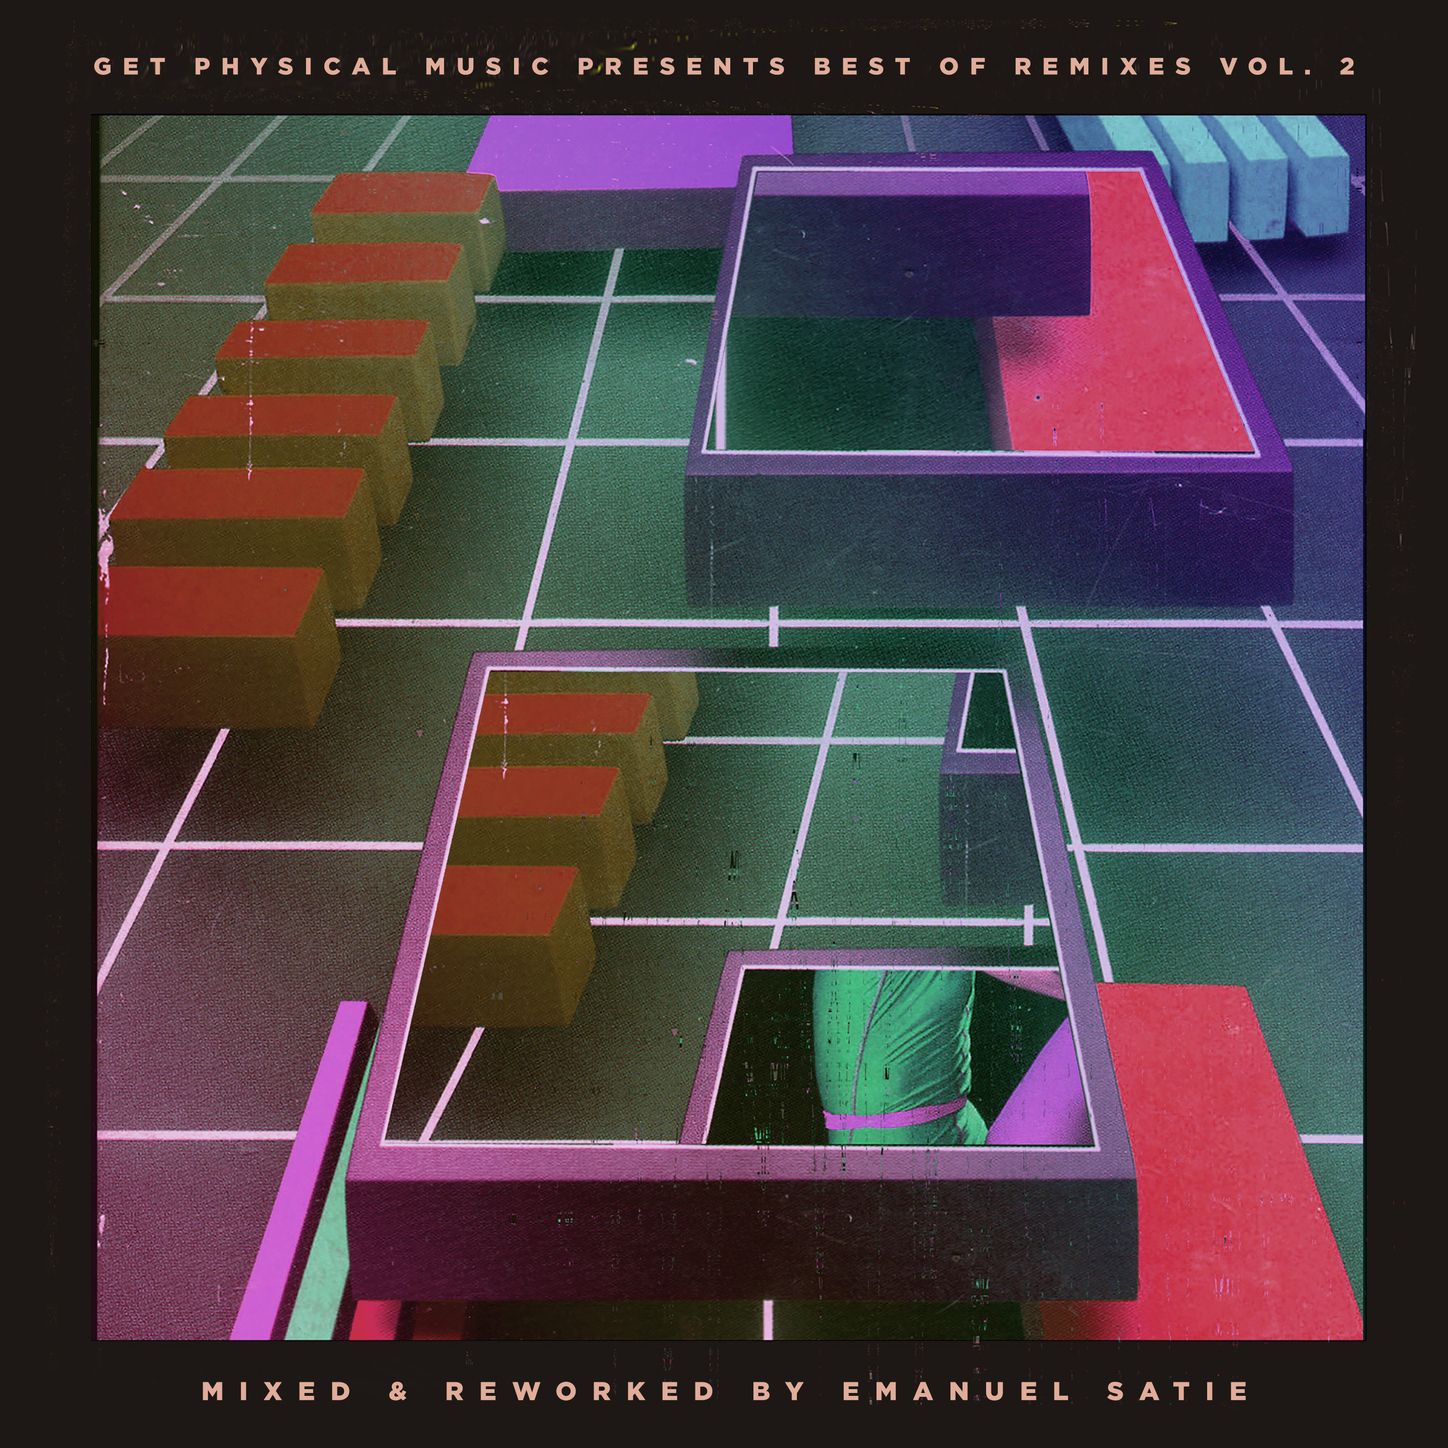 Matthew Pervert (Coyu Remix - Emanuel Satie Rework)